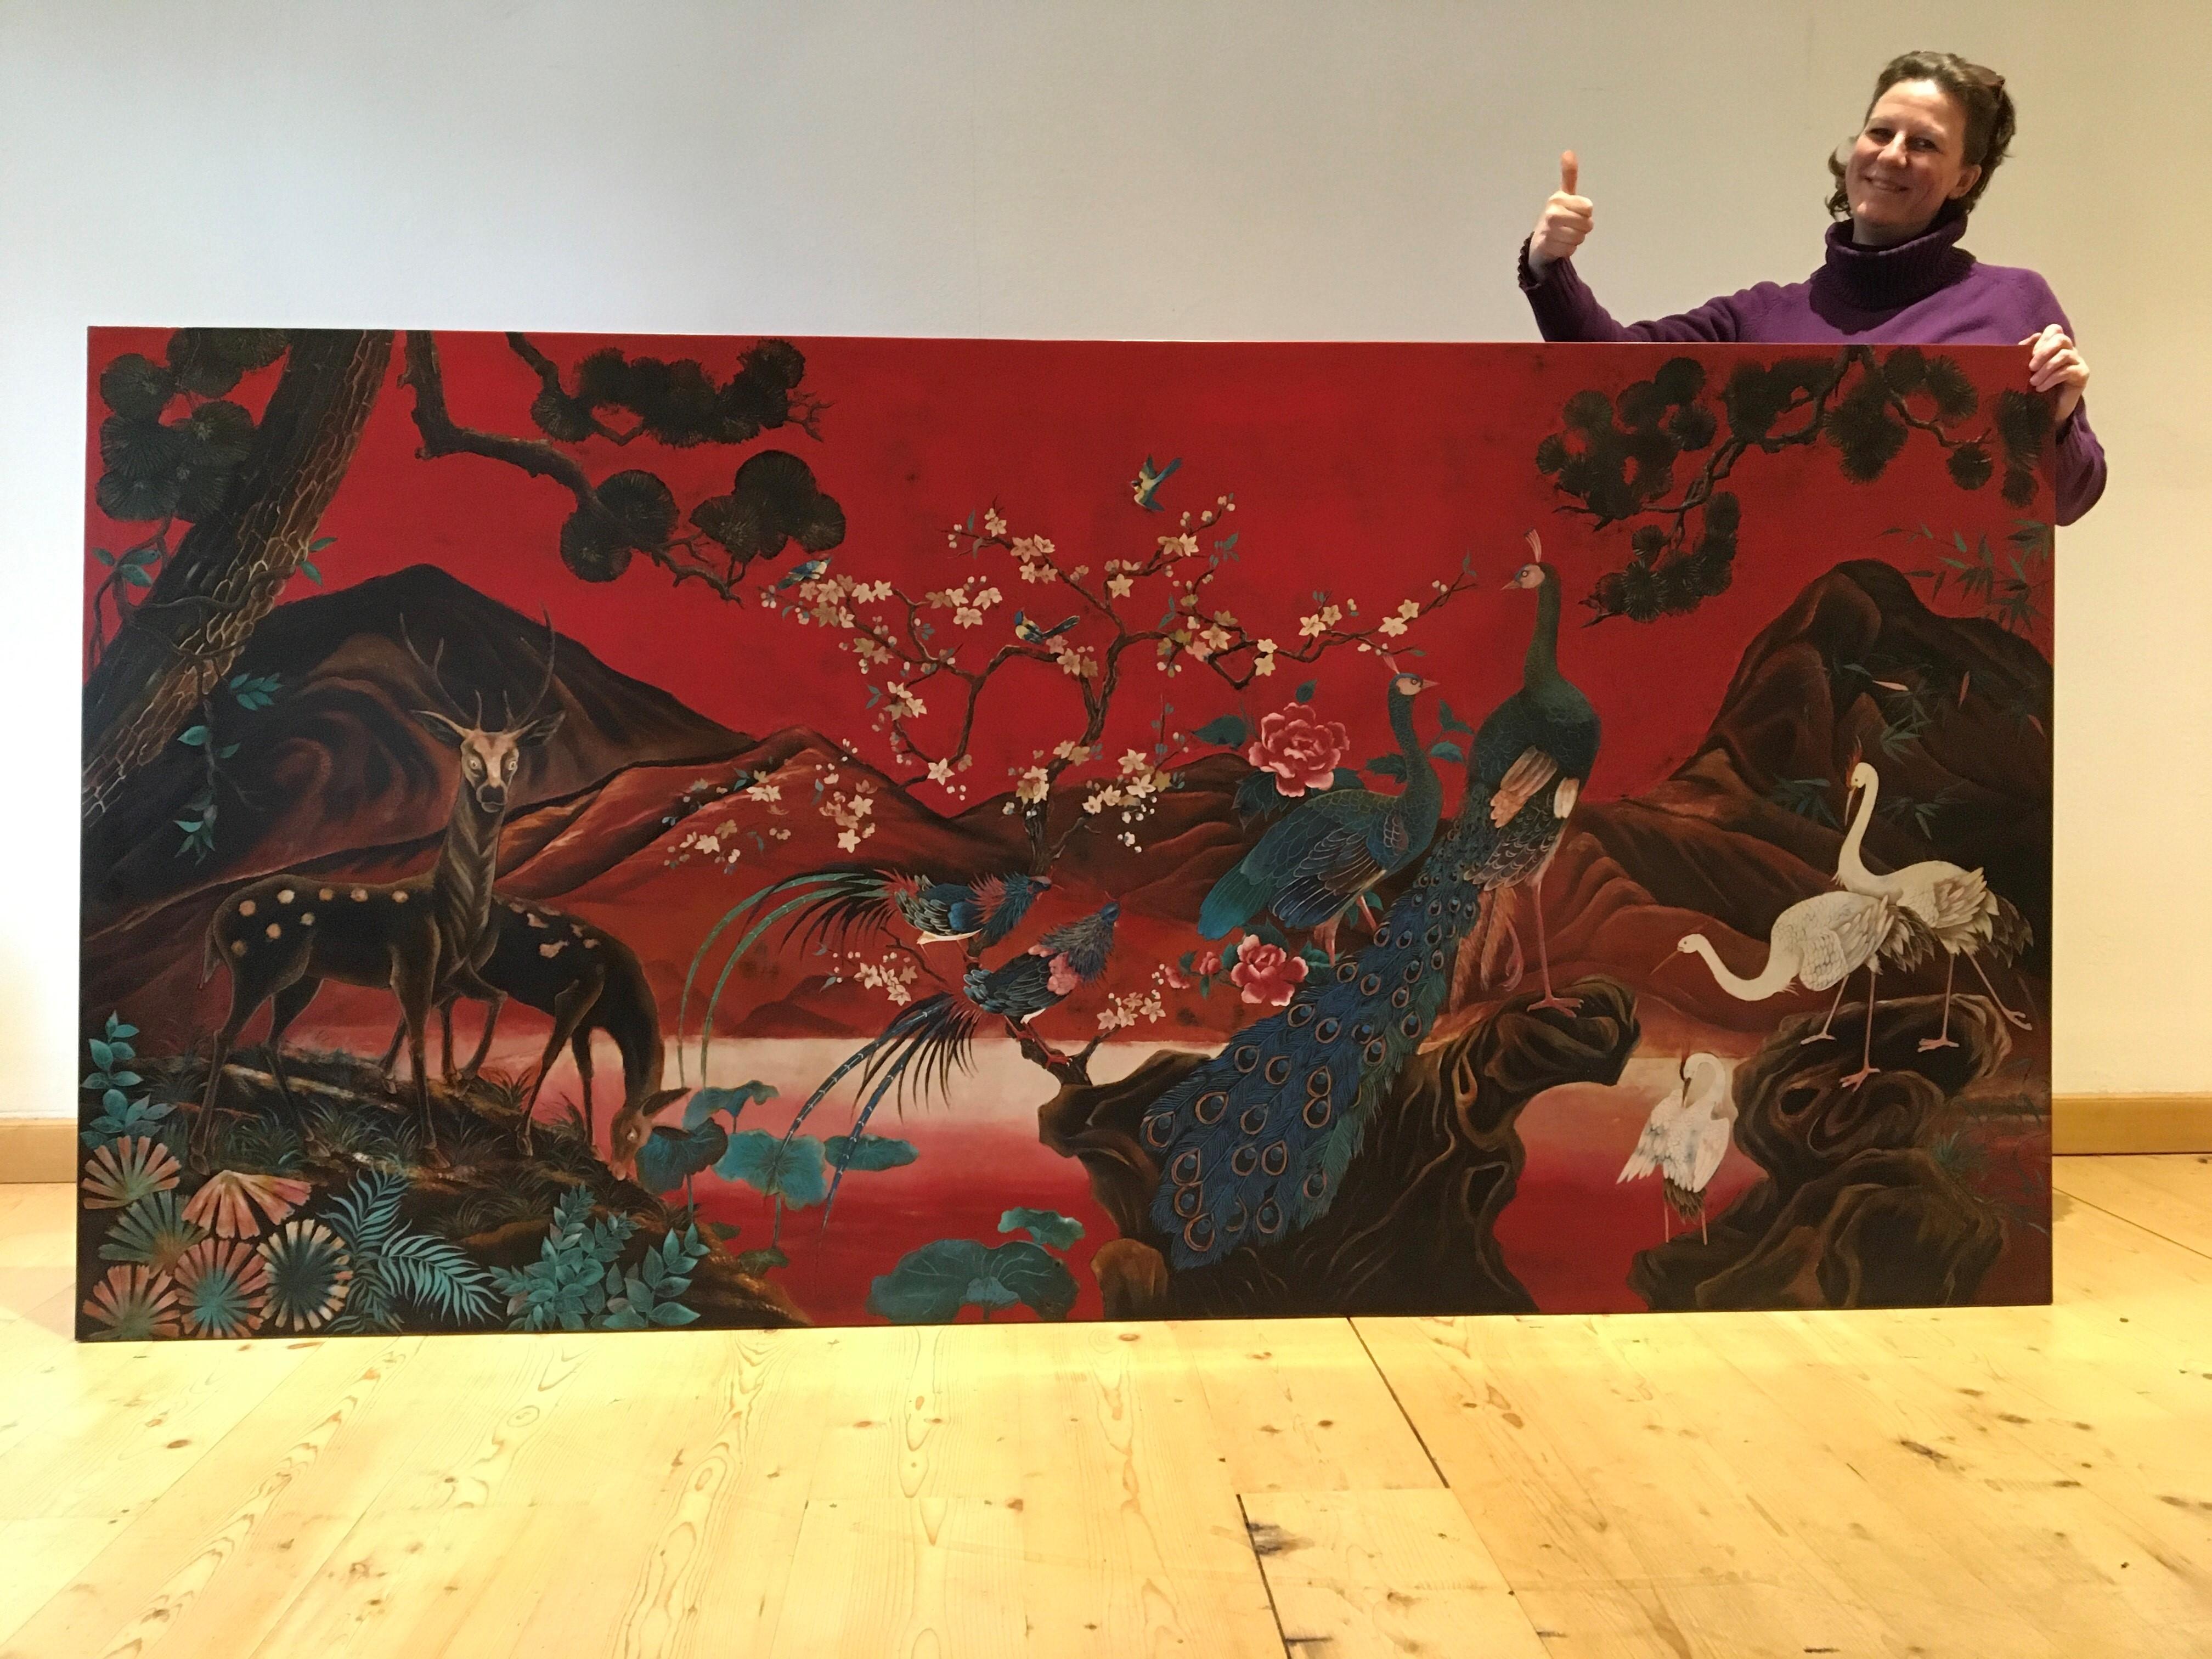 Atemberaubende XL-asiatische Wandtafel mit vielen Vögeln. 
Diese rote Kunsttafel zeigt eine schöne Landschaft mit Hirschen, Vögeln des Paradieses, Pfauen, Kranichen , Bäumen und Blumen. Im Hintergrund die Berge. 
Es wurde vom Künstler 1993